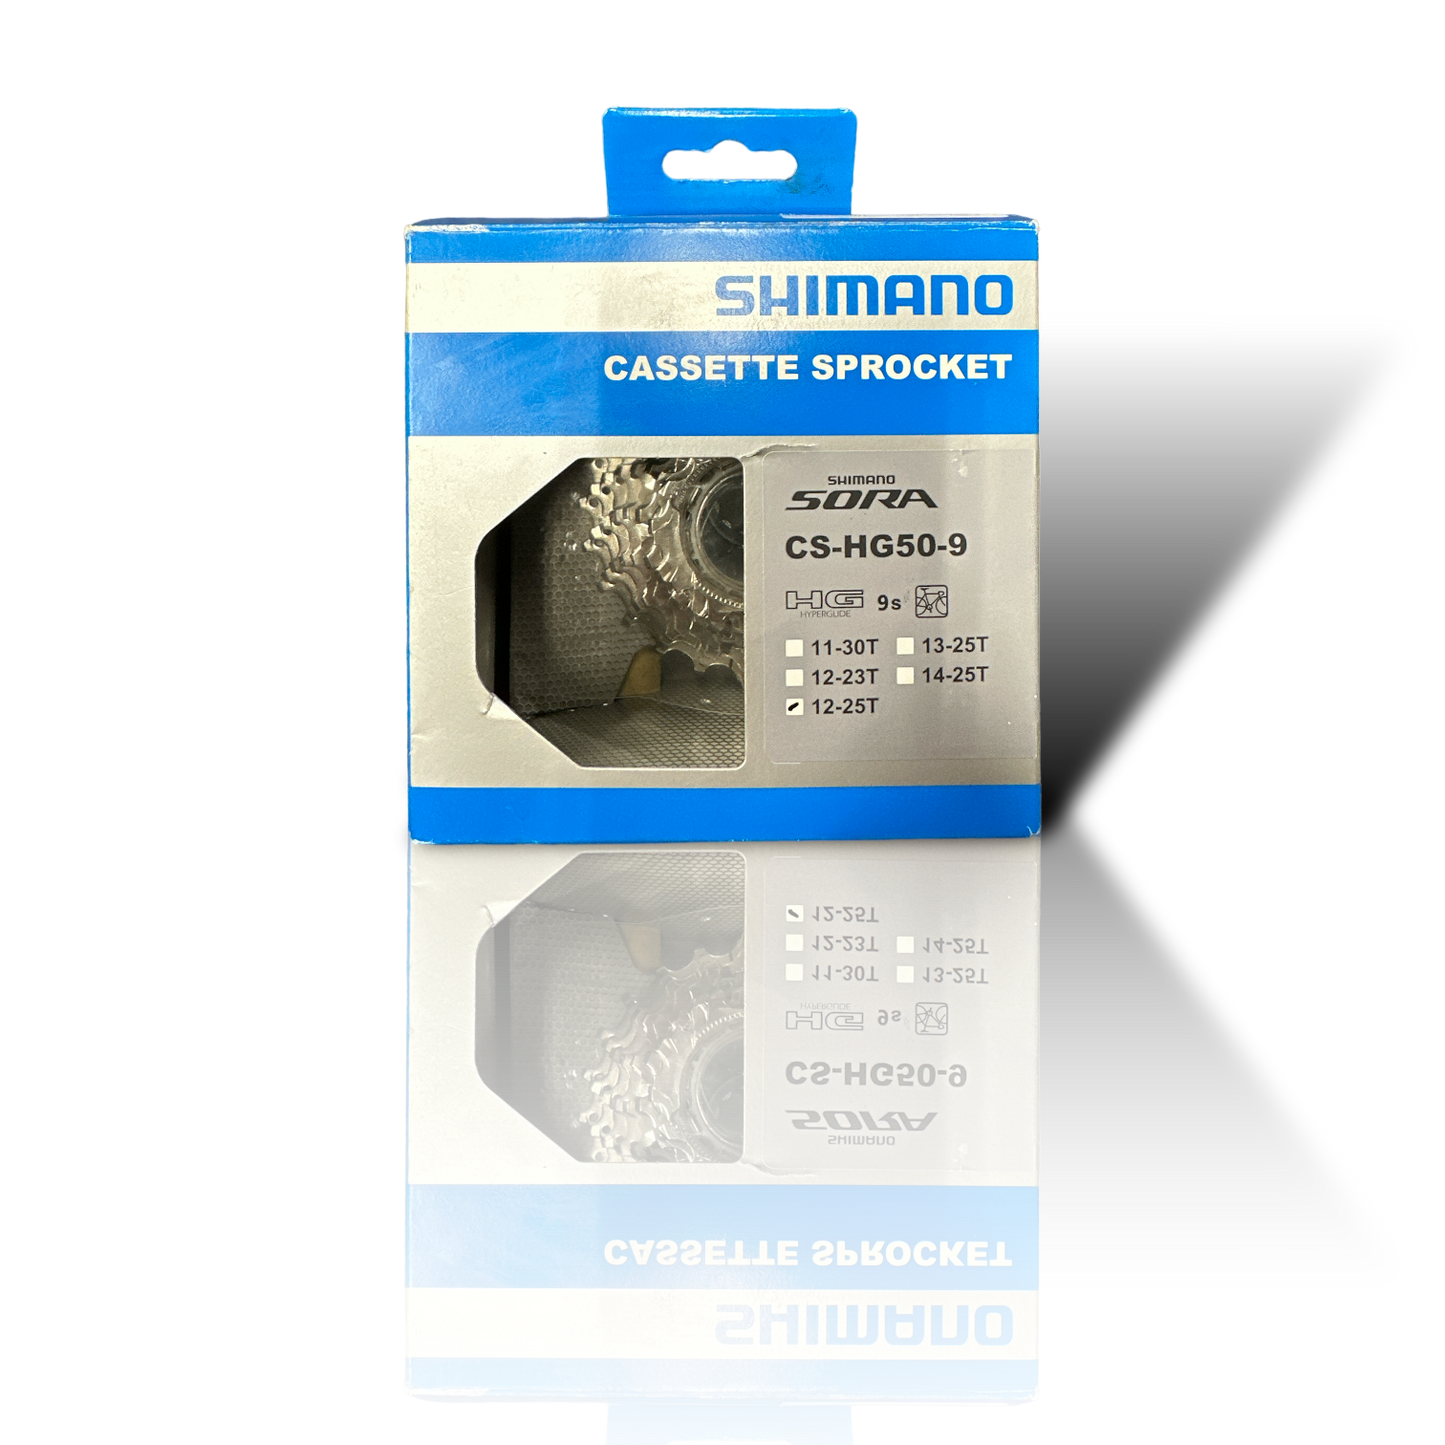 Cassette 9V Shimano Sora CS-HG50-9